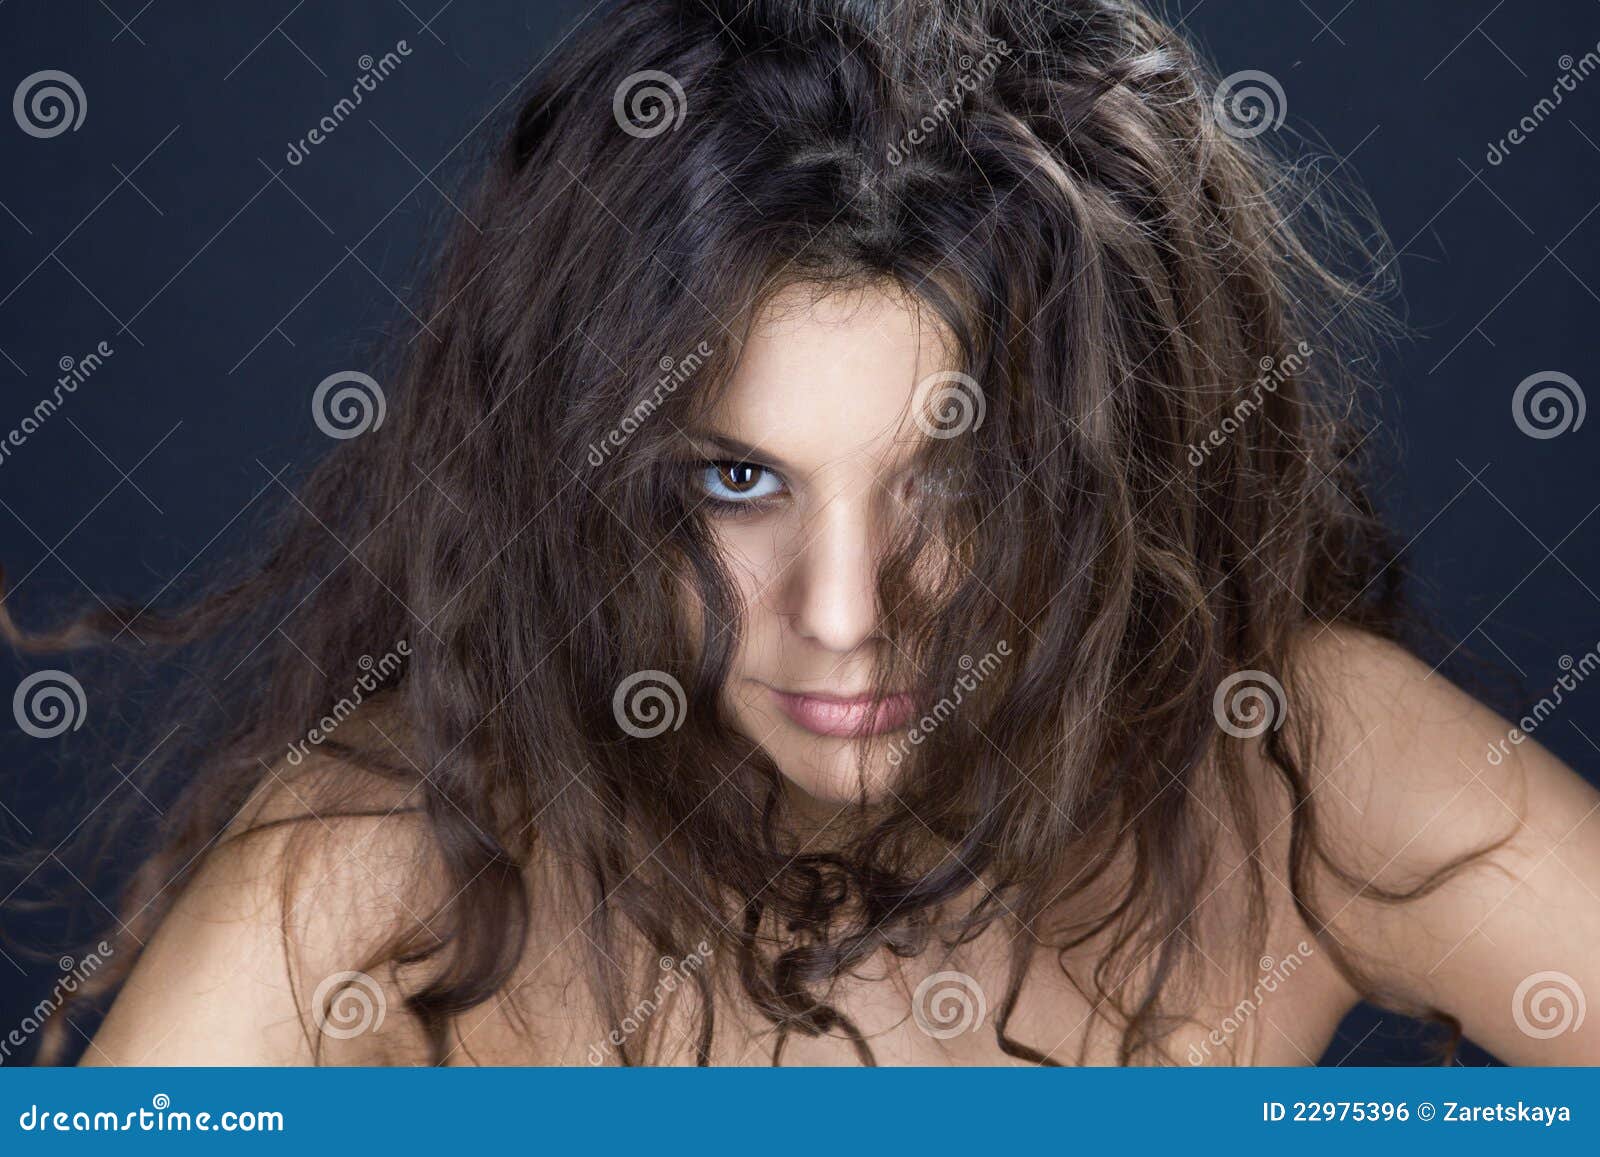 褐色背景下理发师在卷发漂亮女孩的头发女生头发长头发美女图片下载 - 觅知网